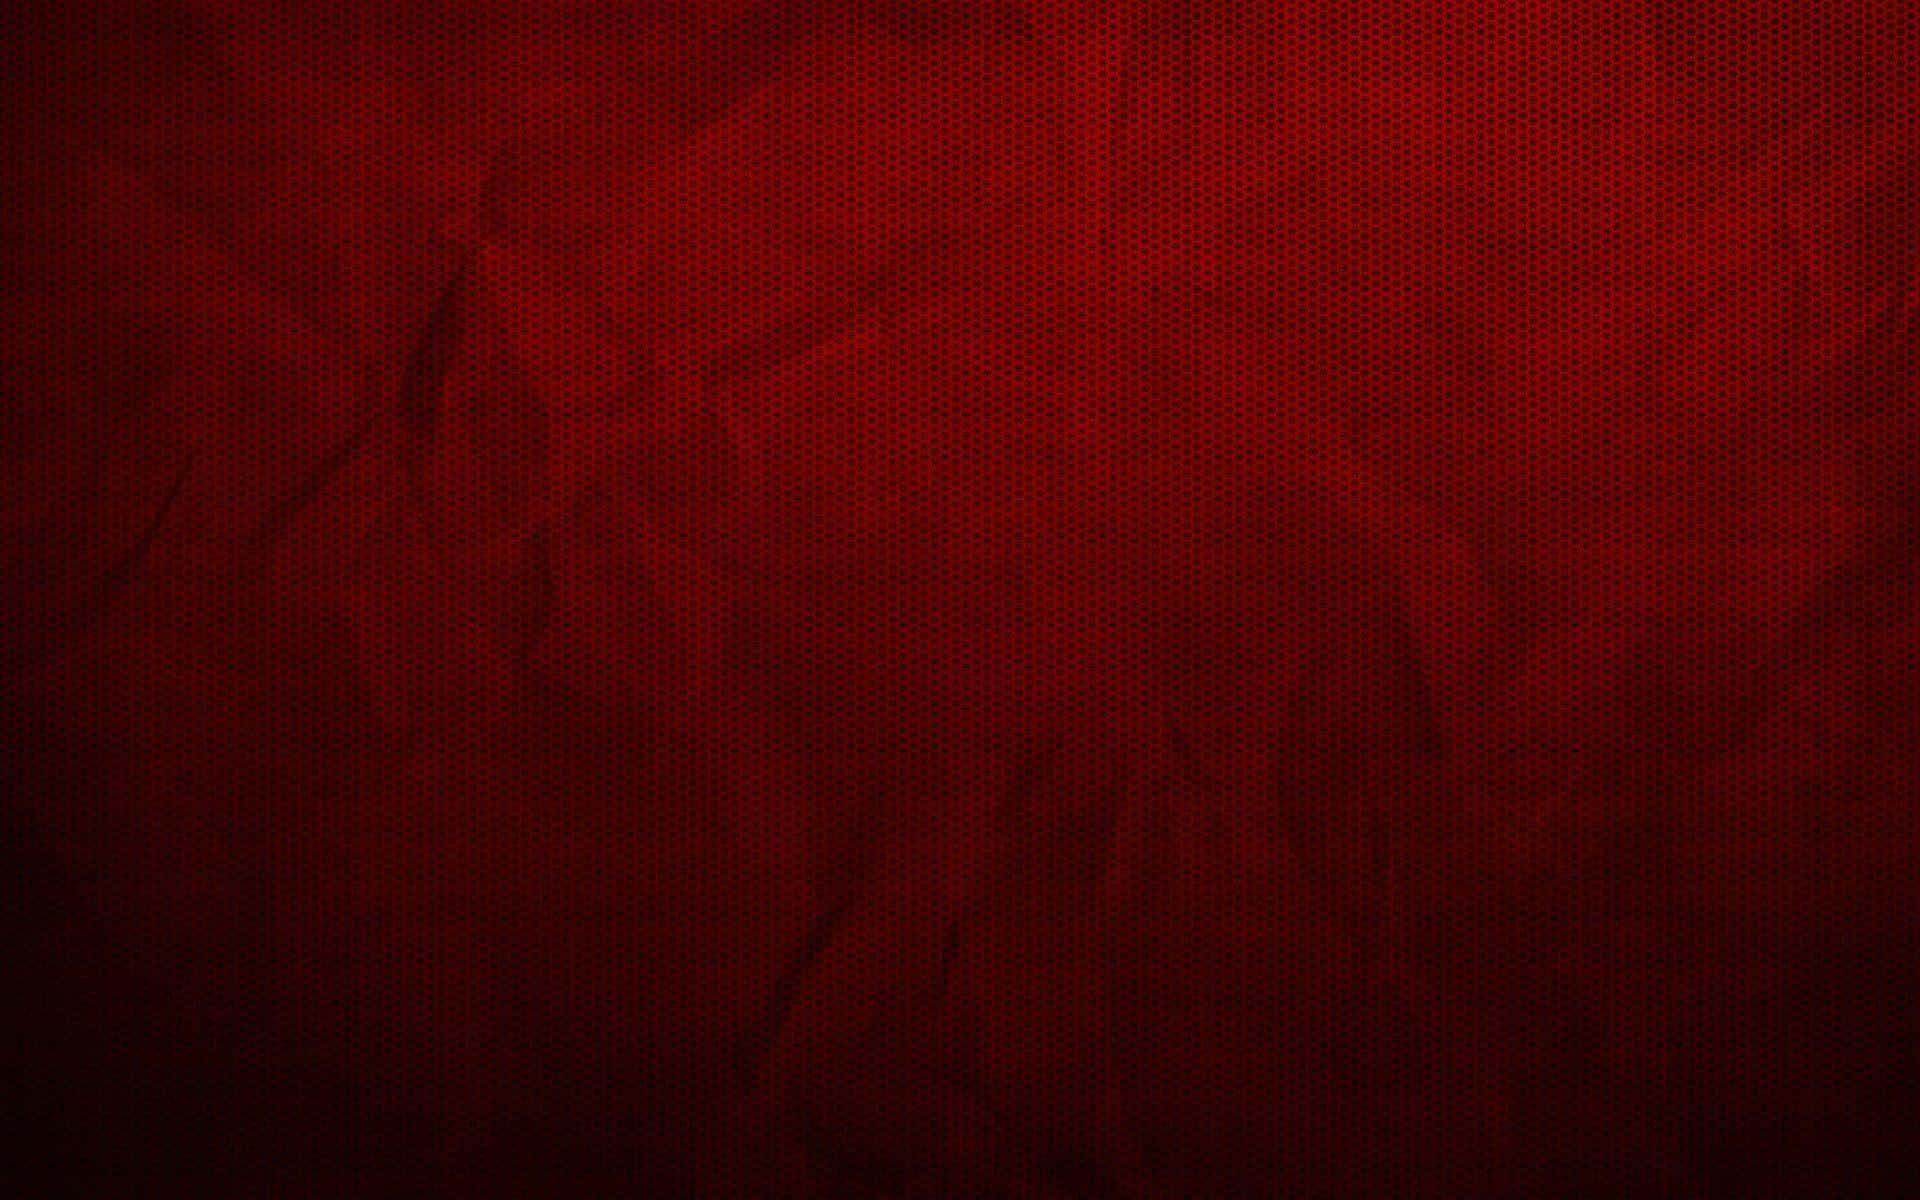 Dark red paper texture background